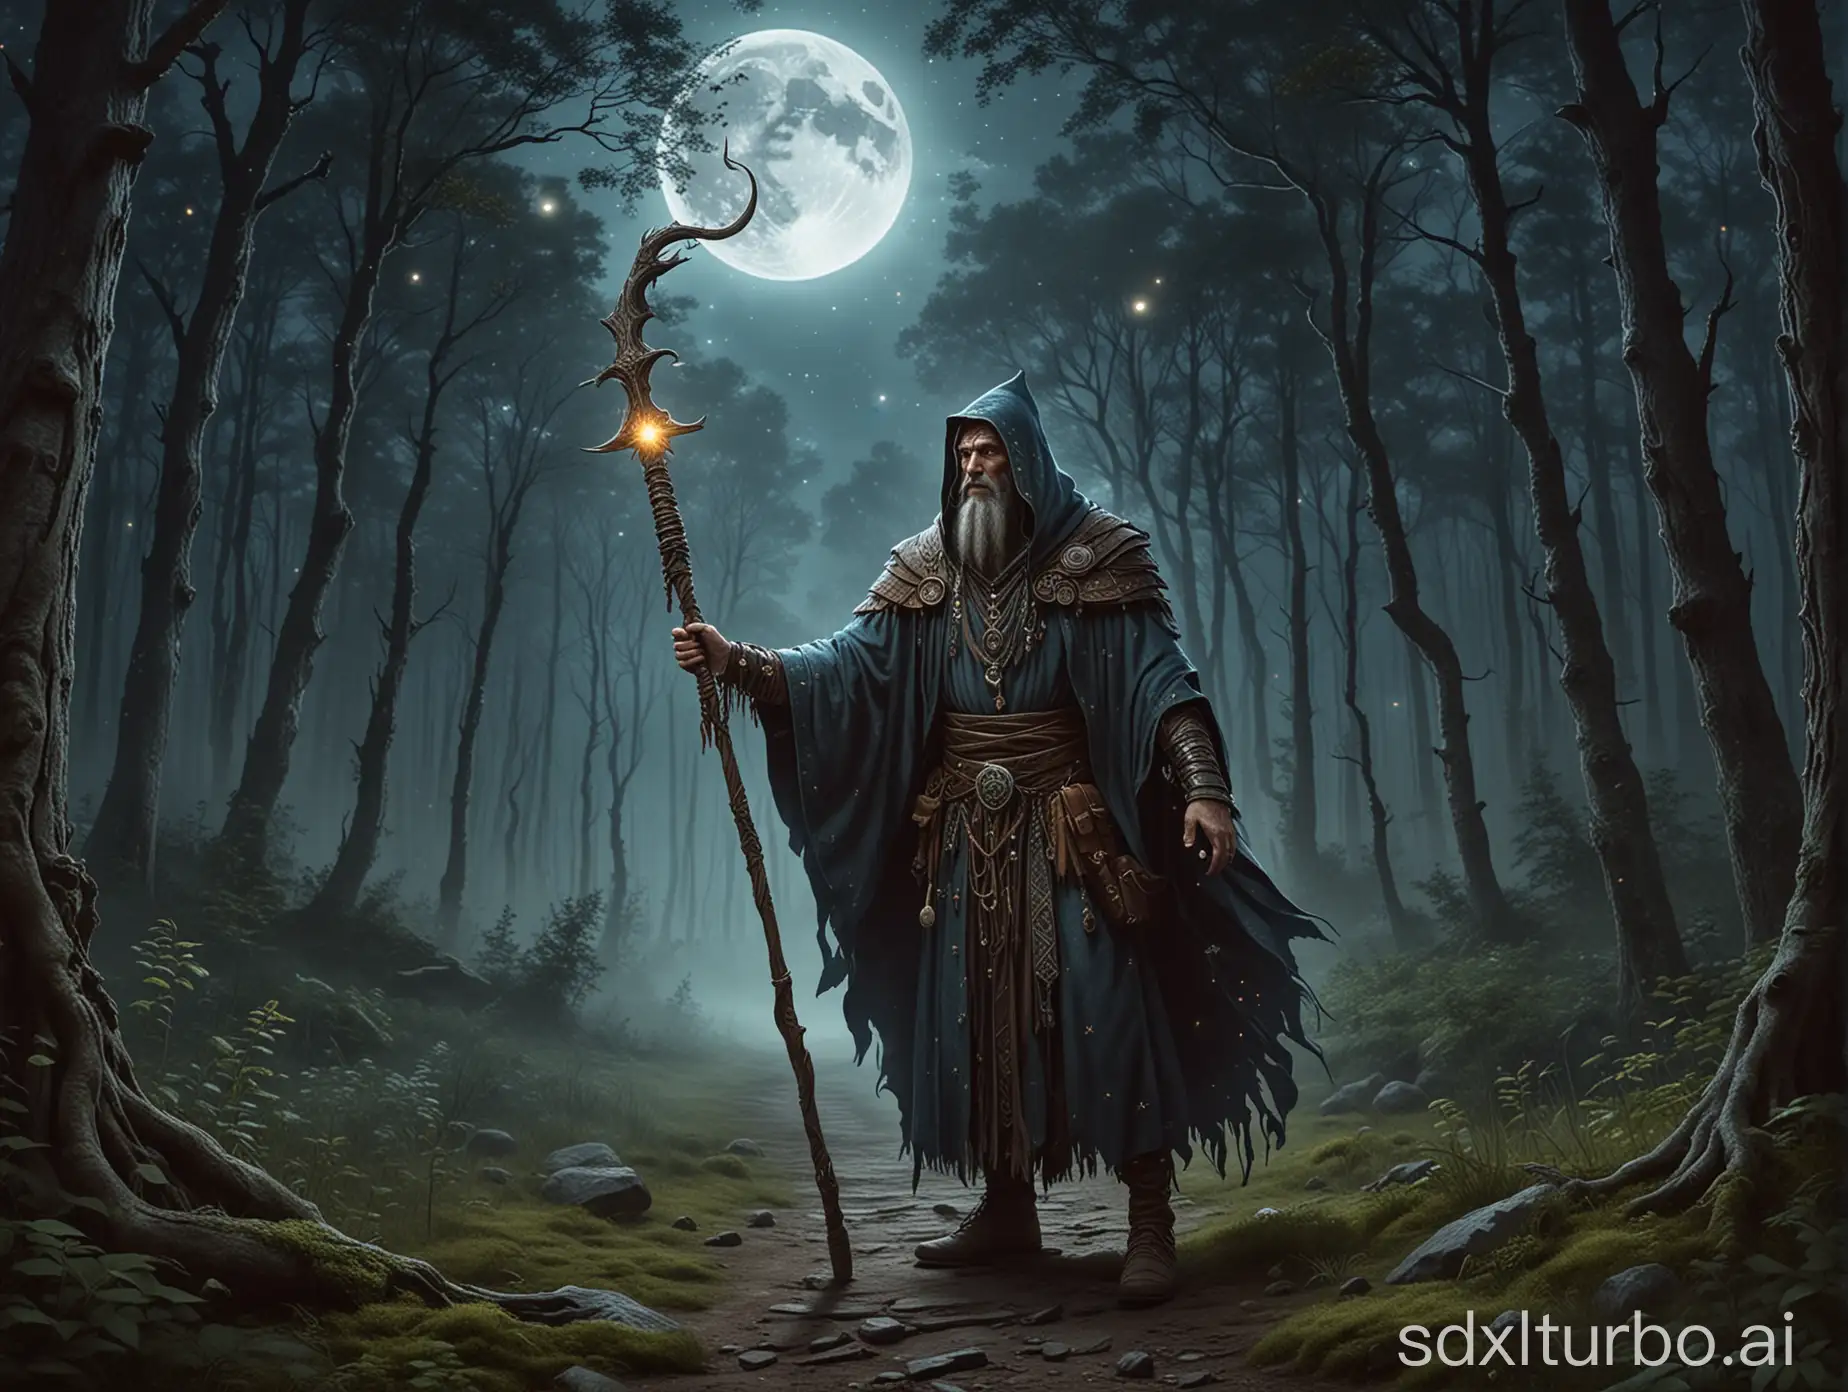 un sorcier ressemblant à un chaman sans chapeau avec son baton et sa cape la nuit à un carrefour de 4 chemins au milieu d'une foret avec la lune et les étoiles dans le ciel